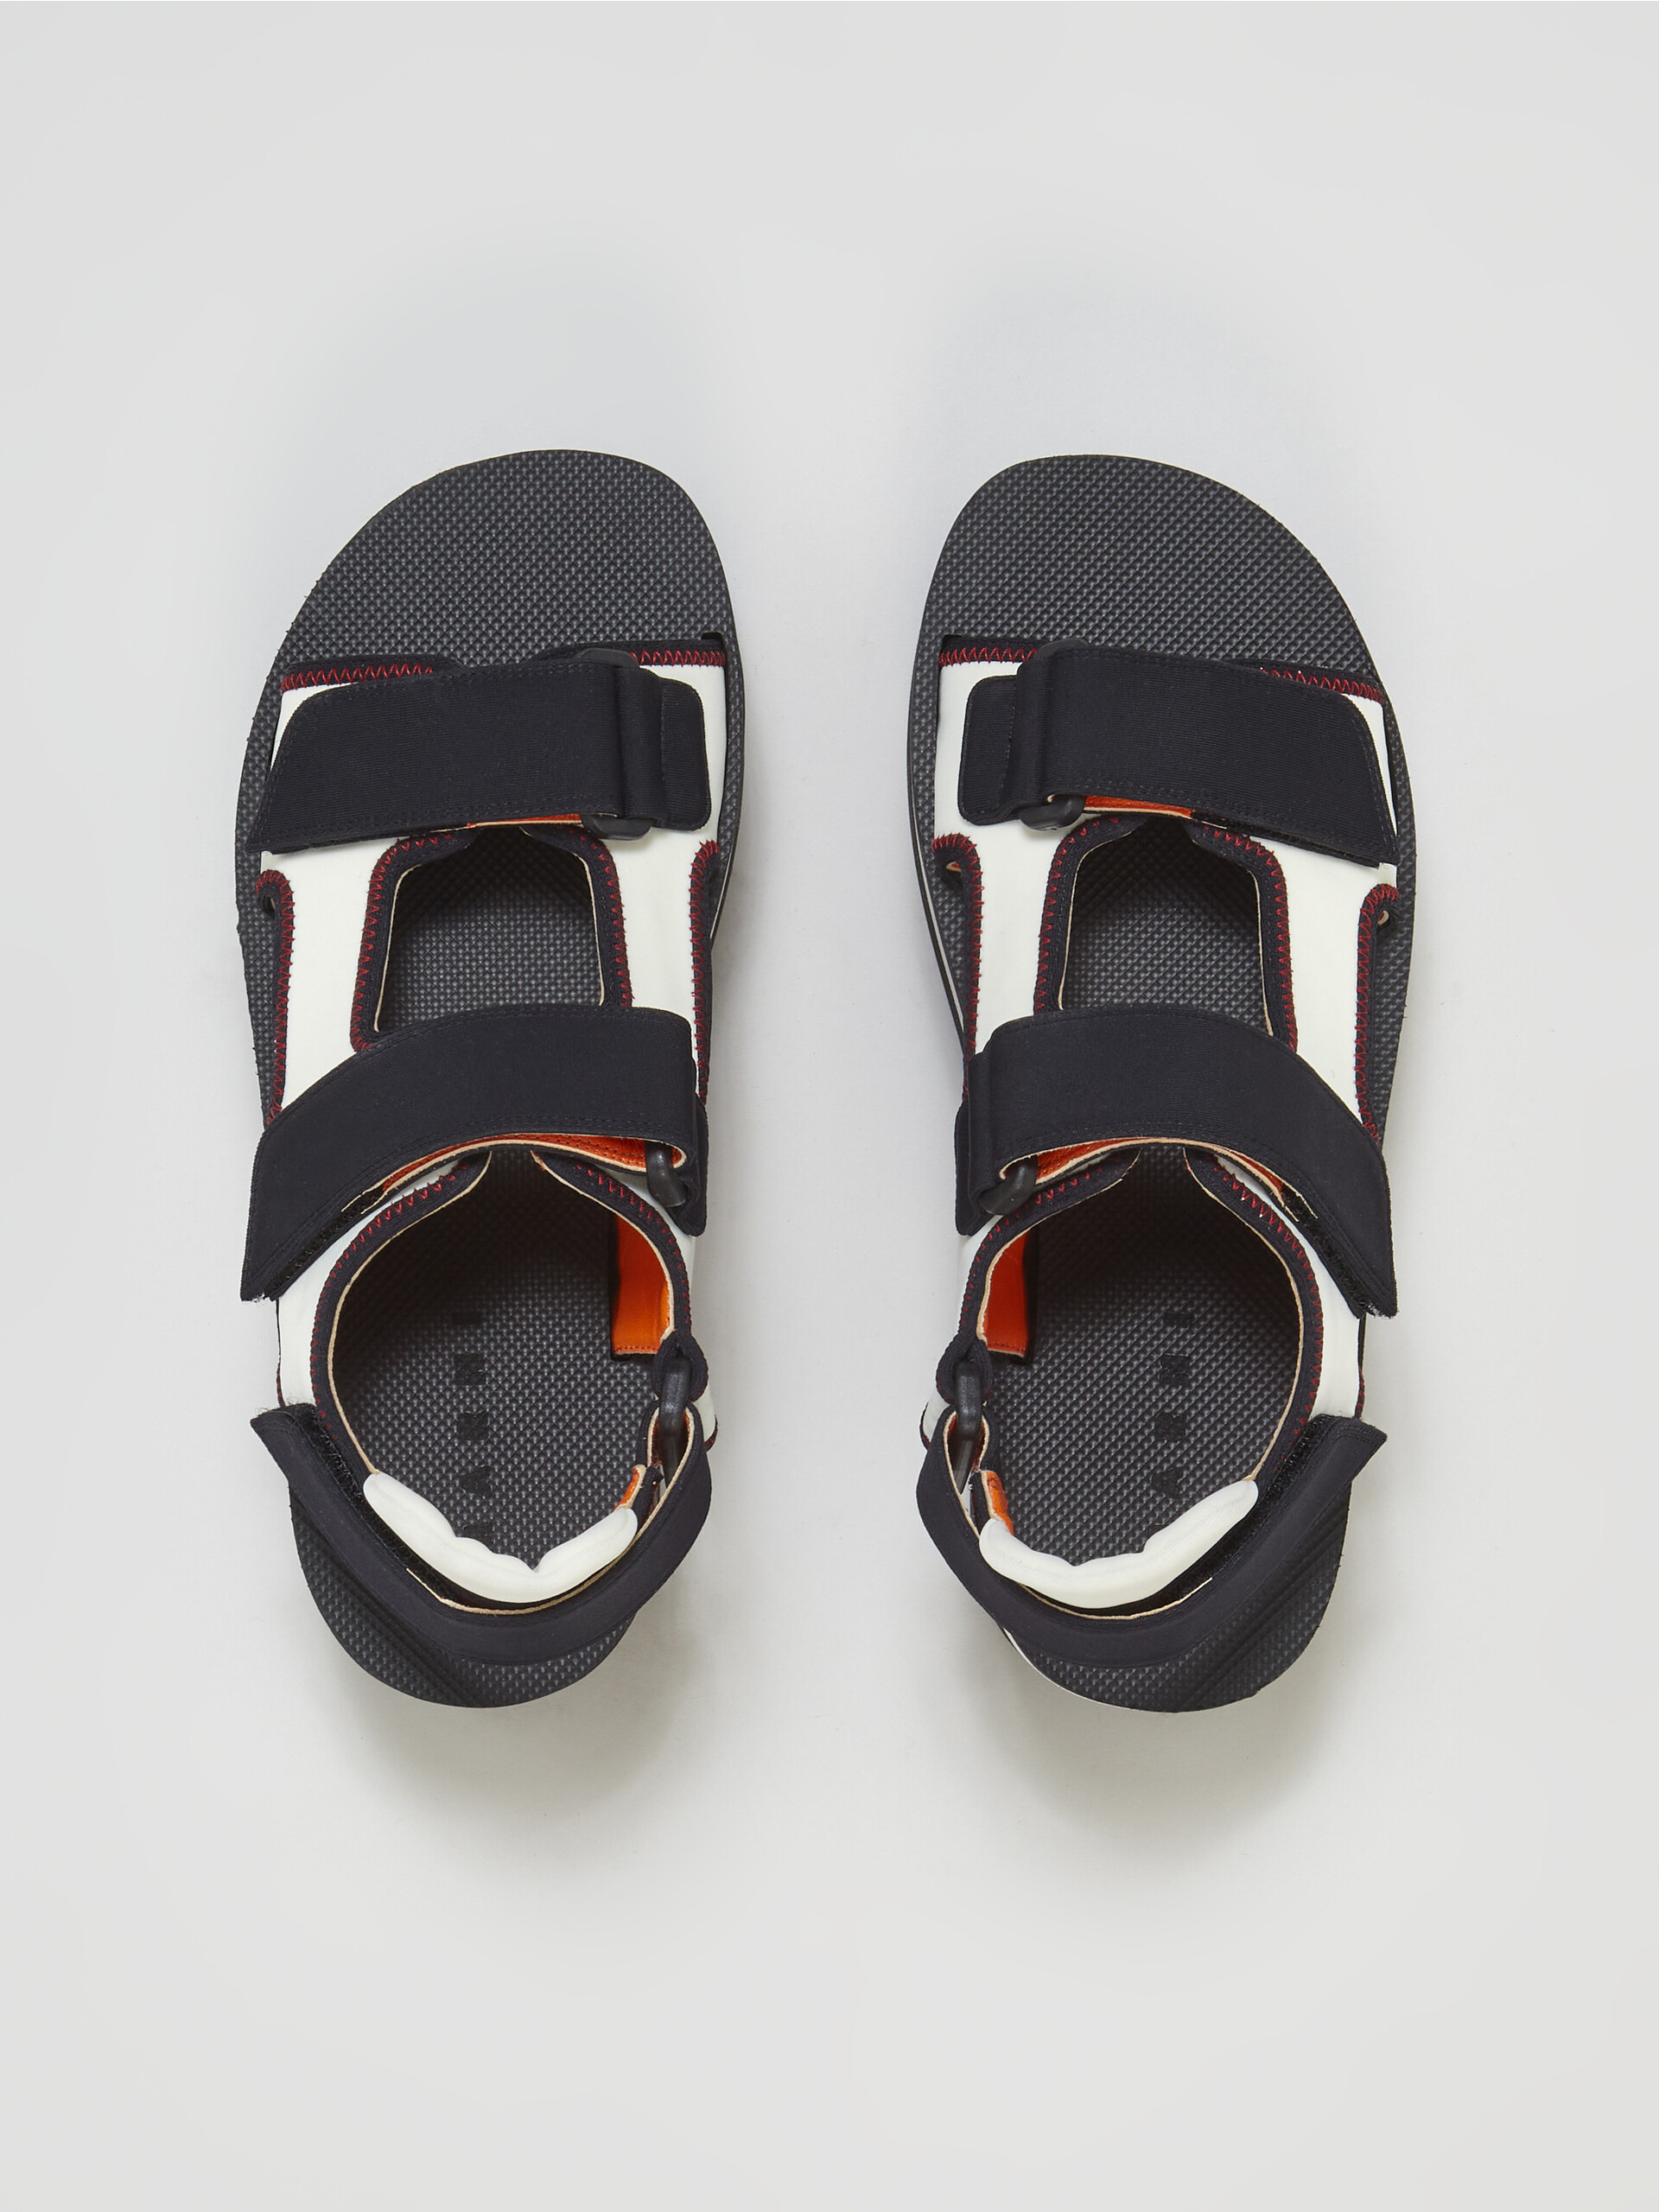 블랙 & 화이트 테크니컬 패브릭 샌들 - Sandals - Image 4